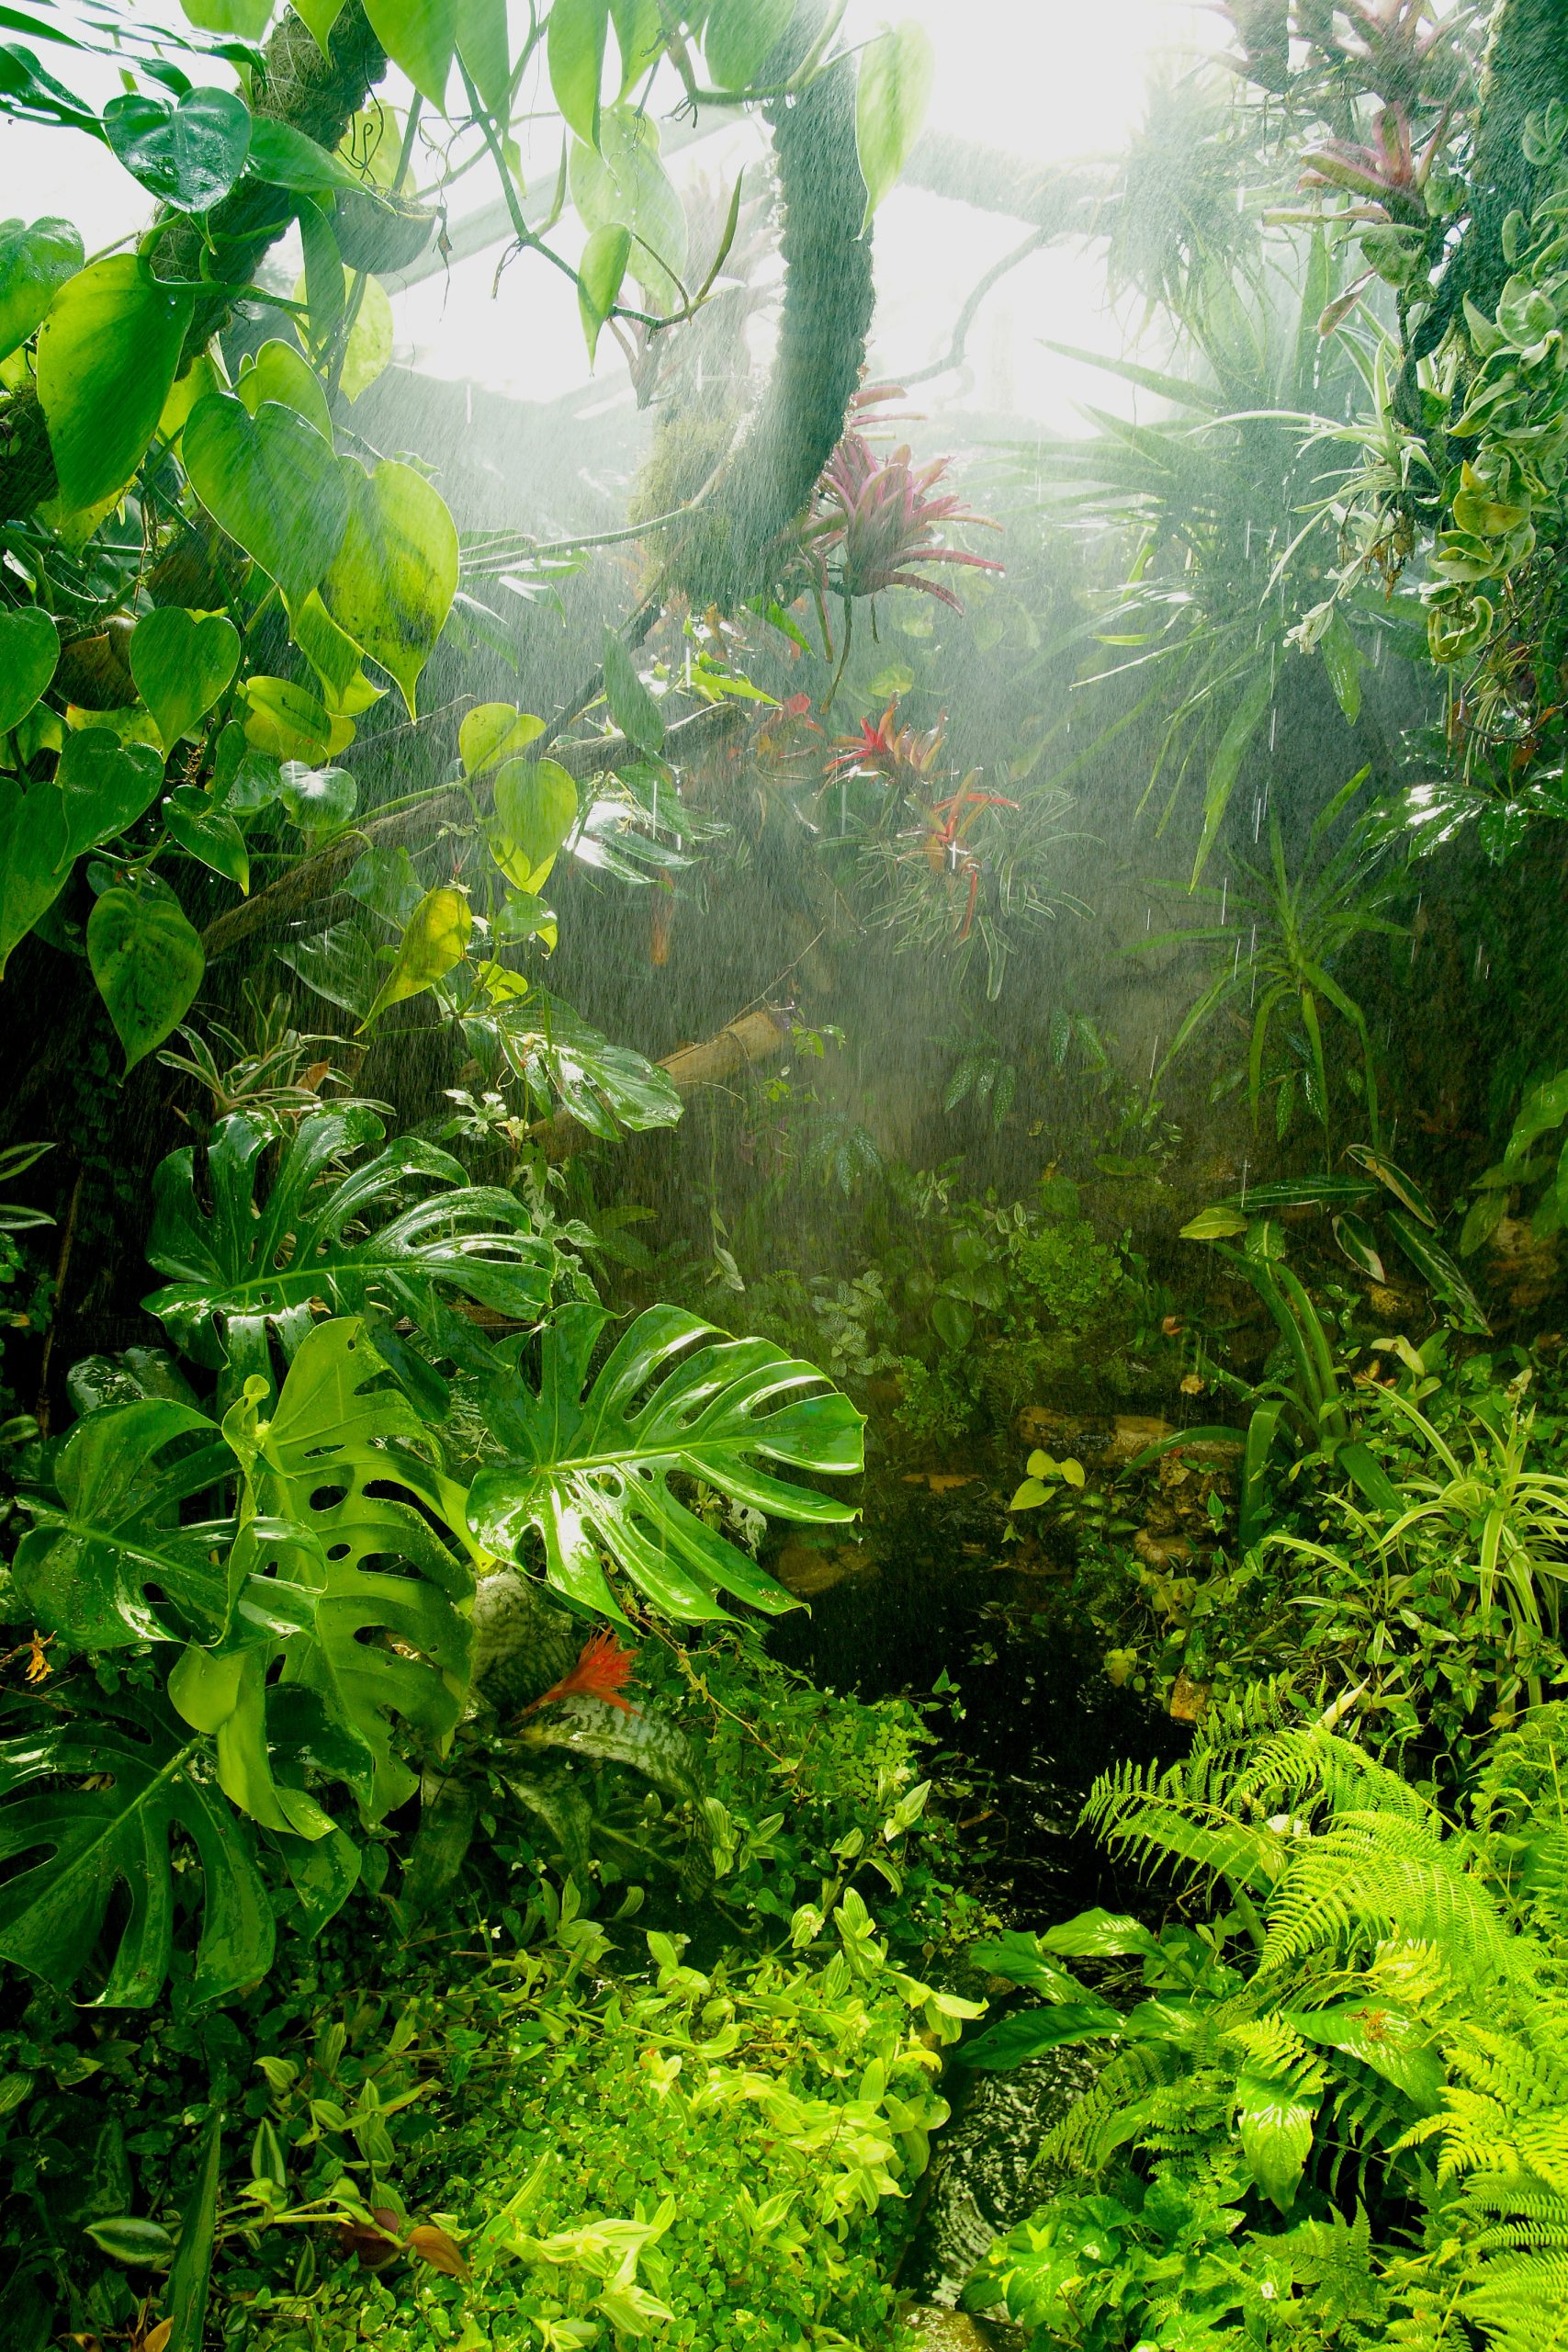 Fog in a tropical environment